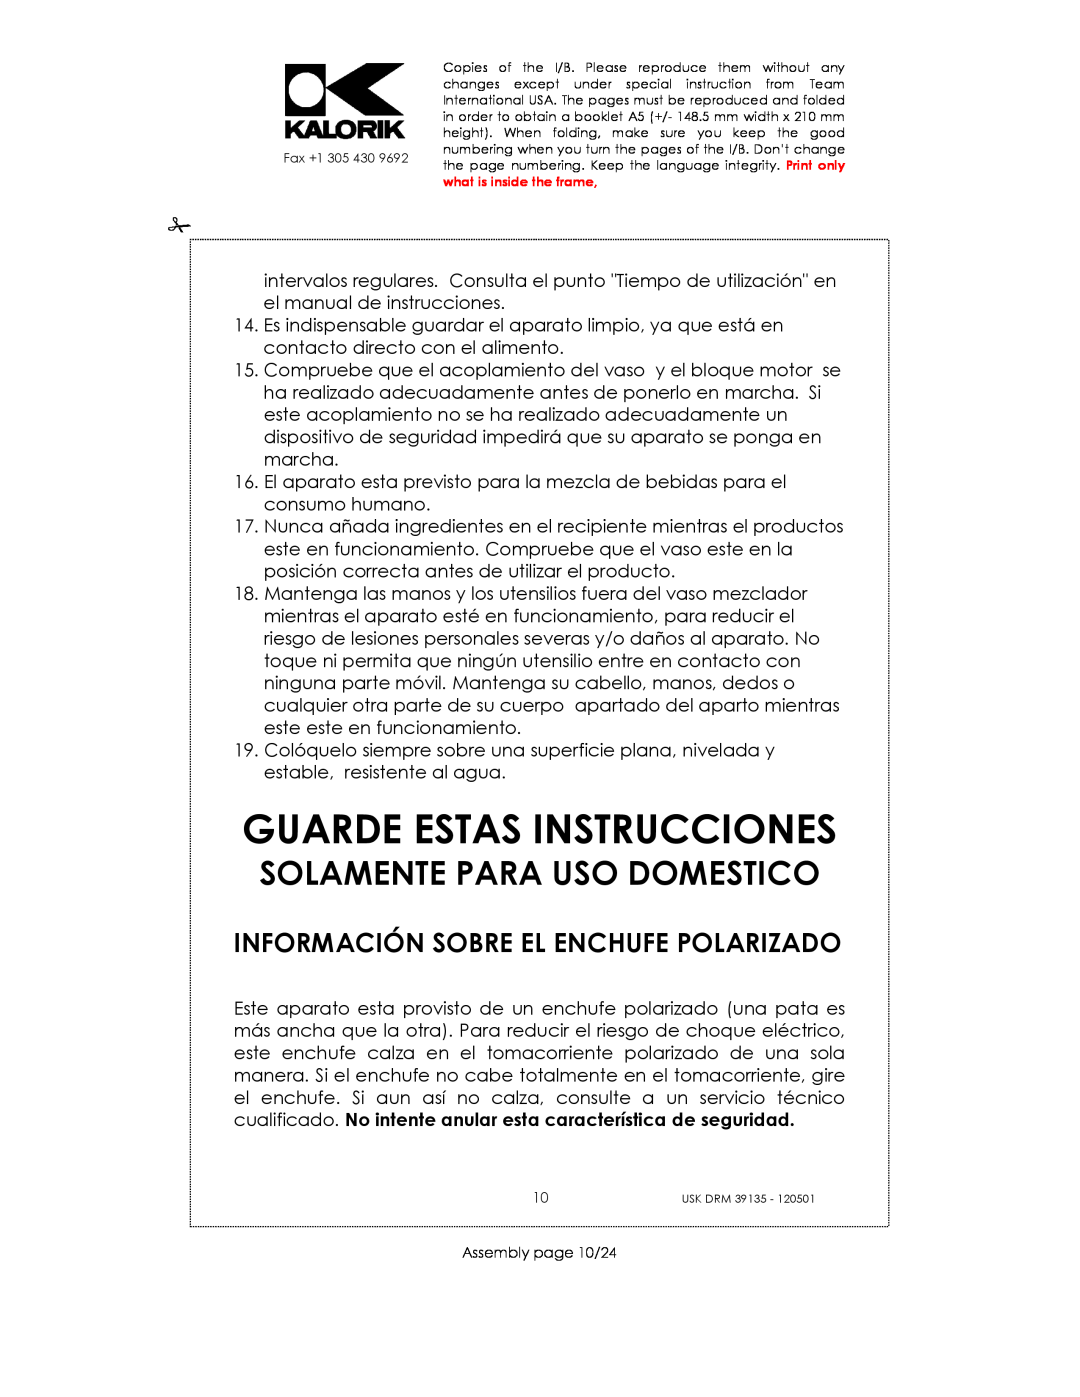 Kalorik USK DRM 39135 Guarde Estas Instrucciones, Información Sobre El Enchufe Polarizado, Solamente Para Uso Domestico 